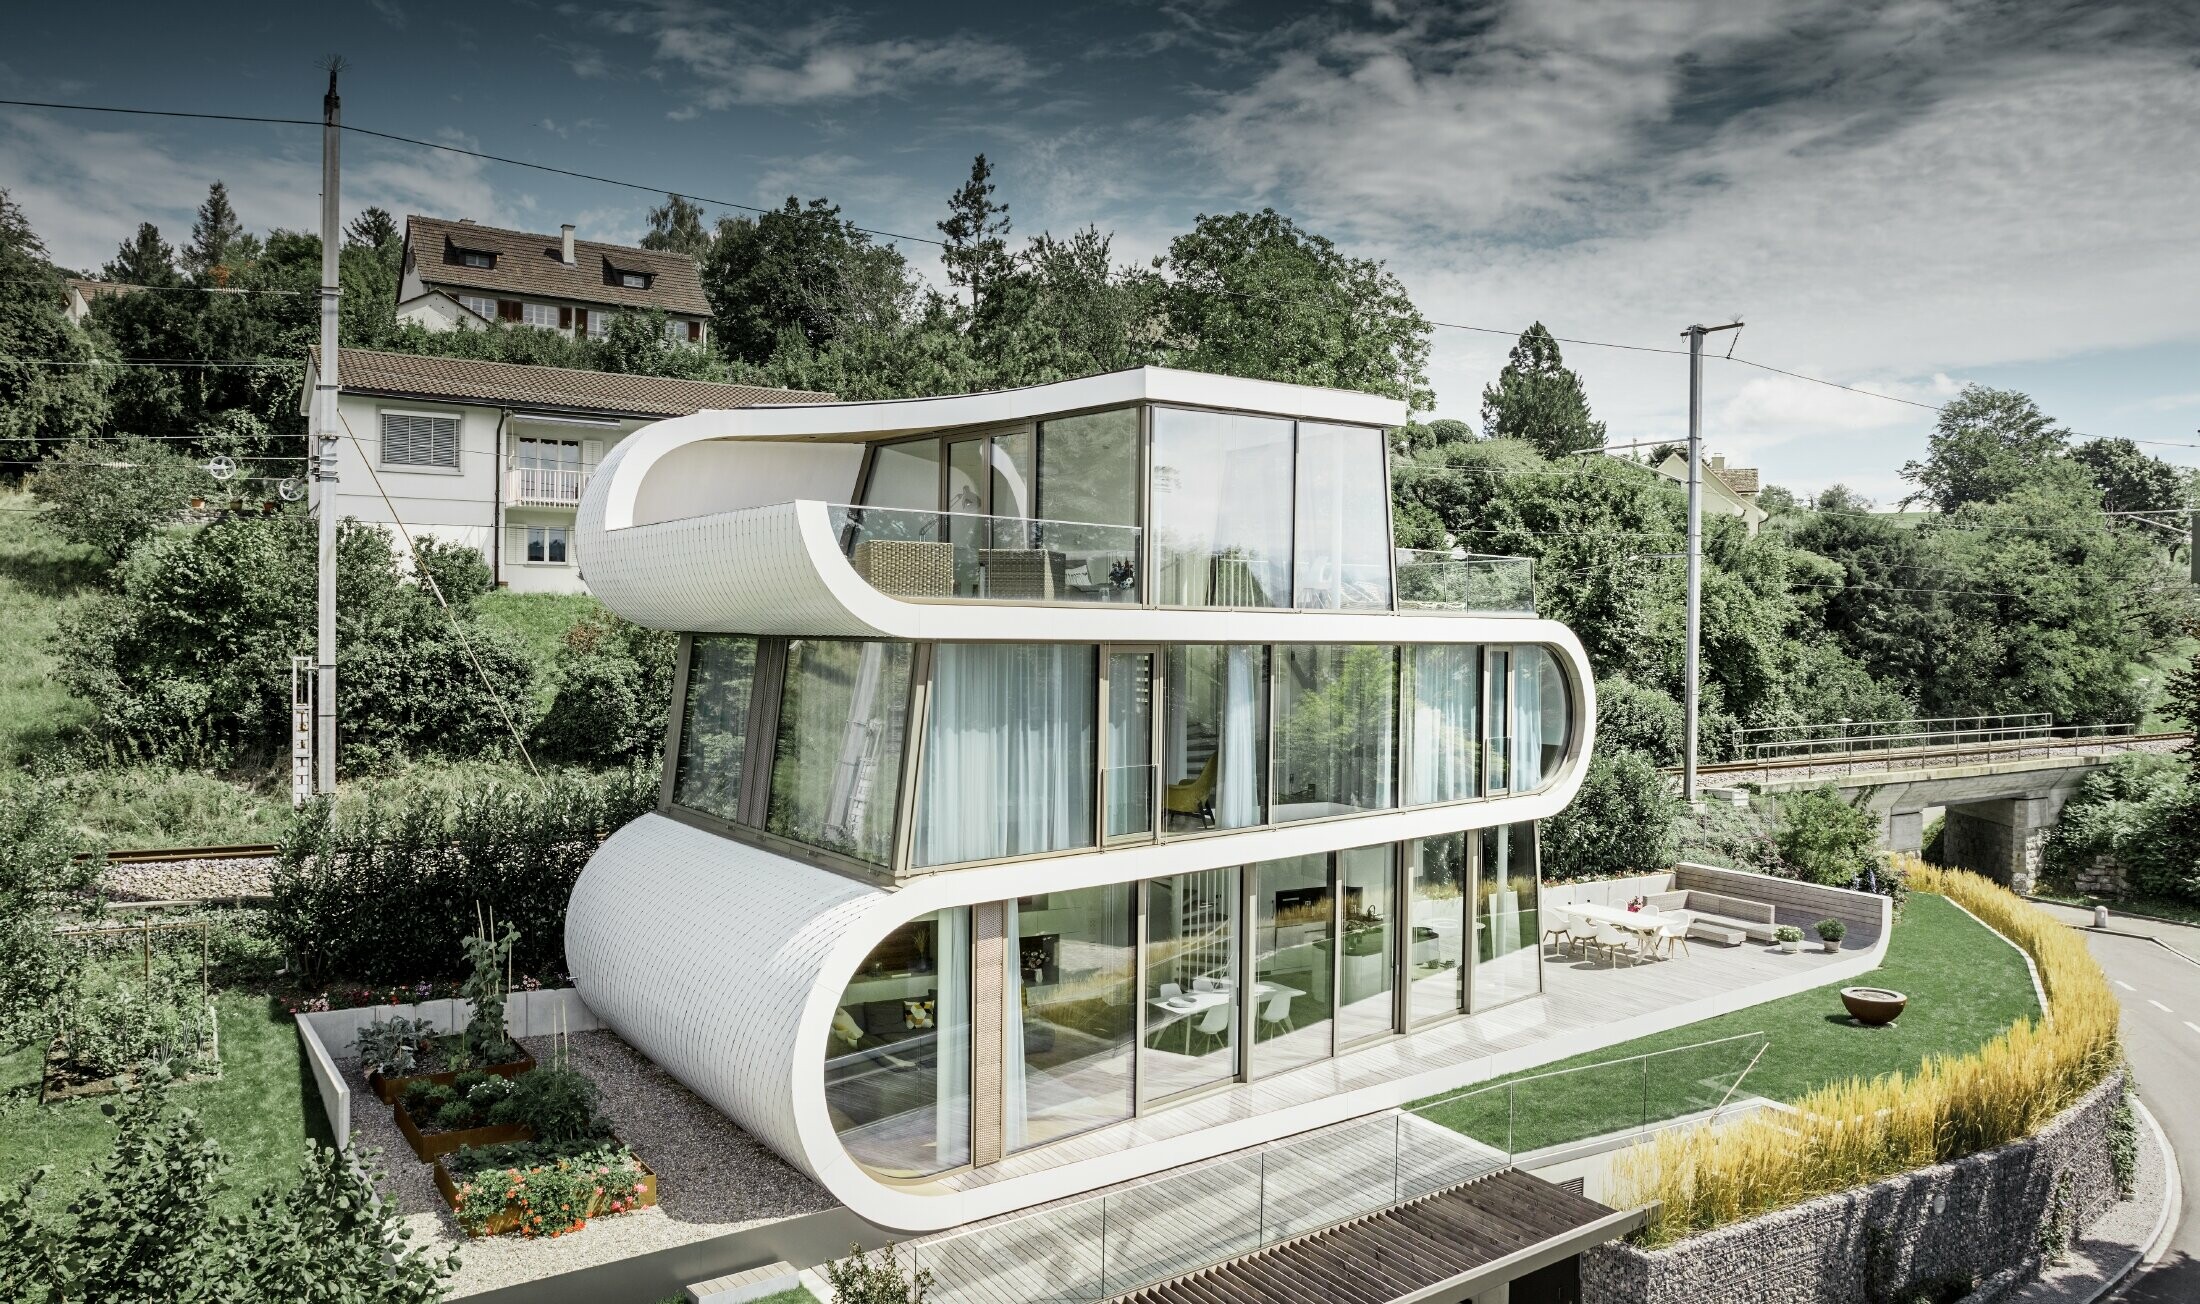 Modernissima casa unifamiliare progettata dall'architetto di Zurigo Camenzind; una fascia ricurva collega i singoli piani. Le curvature sono state rivestite con la scandola PREFA in bianco puro. La casa ha numerose ampie vetrate, che rendono l'intero ambiente particolarmente arioso.